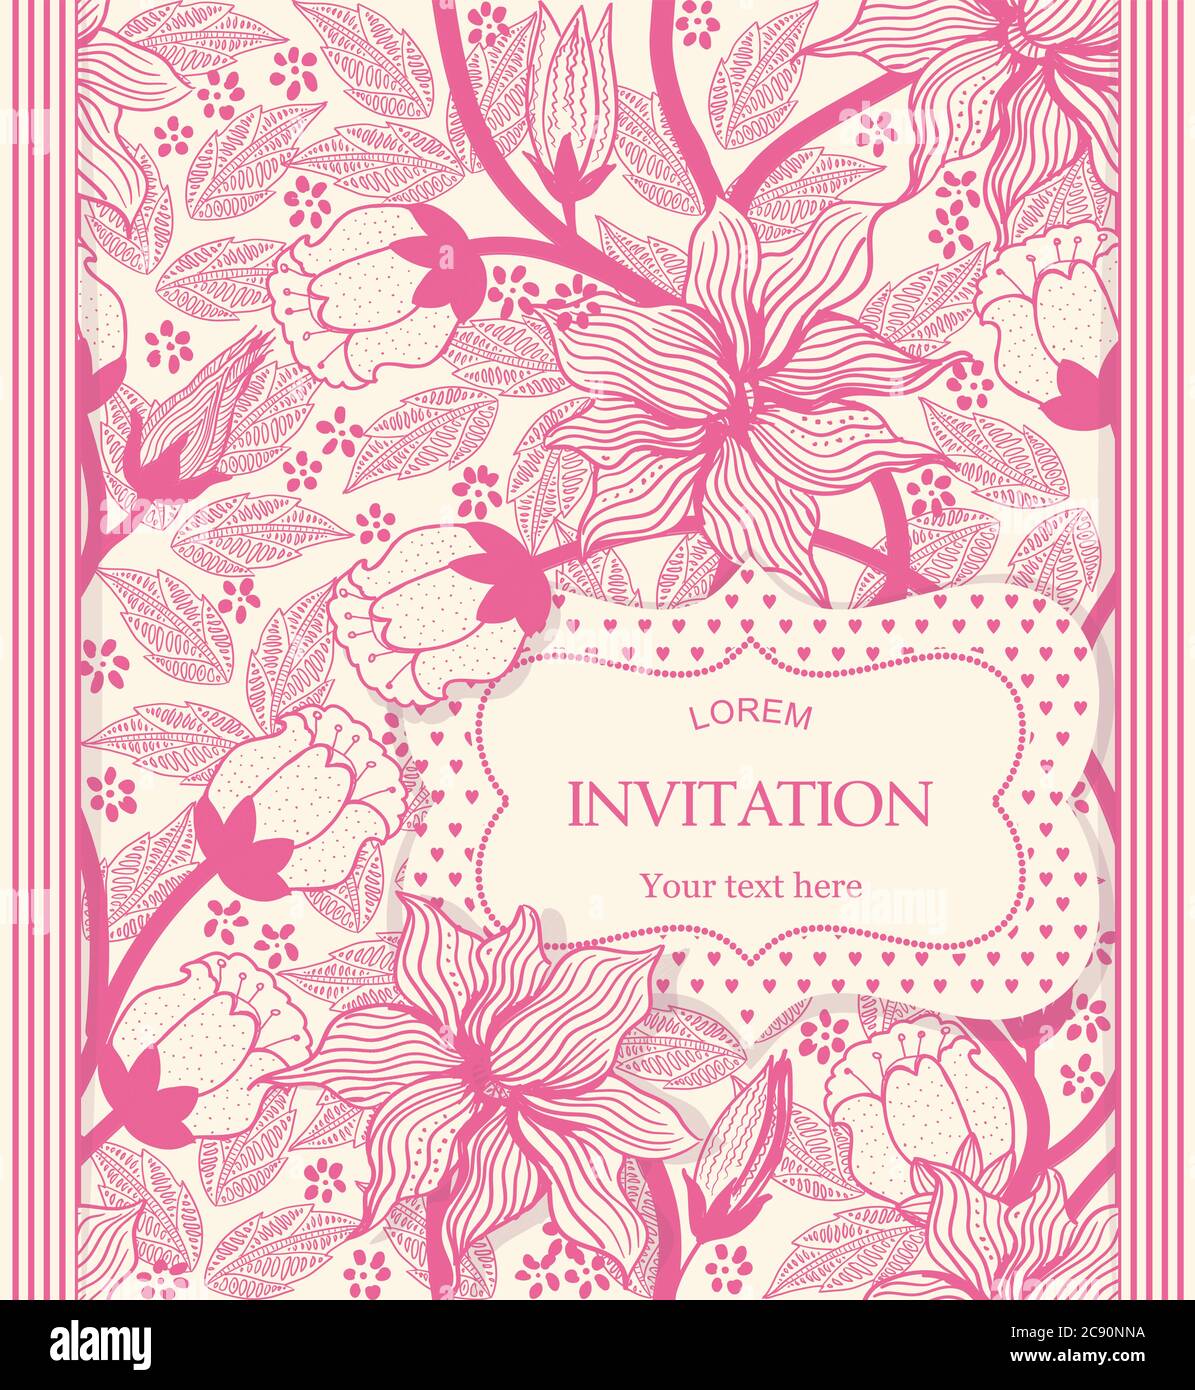 biglietti d'auguri vintage, invito con ornamenti floreali, cartoline belle e di lusso Illustrazione Vettoriale